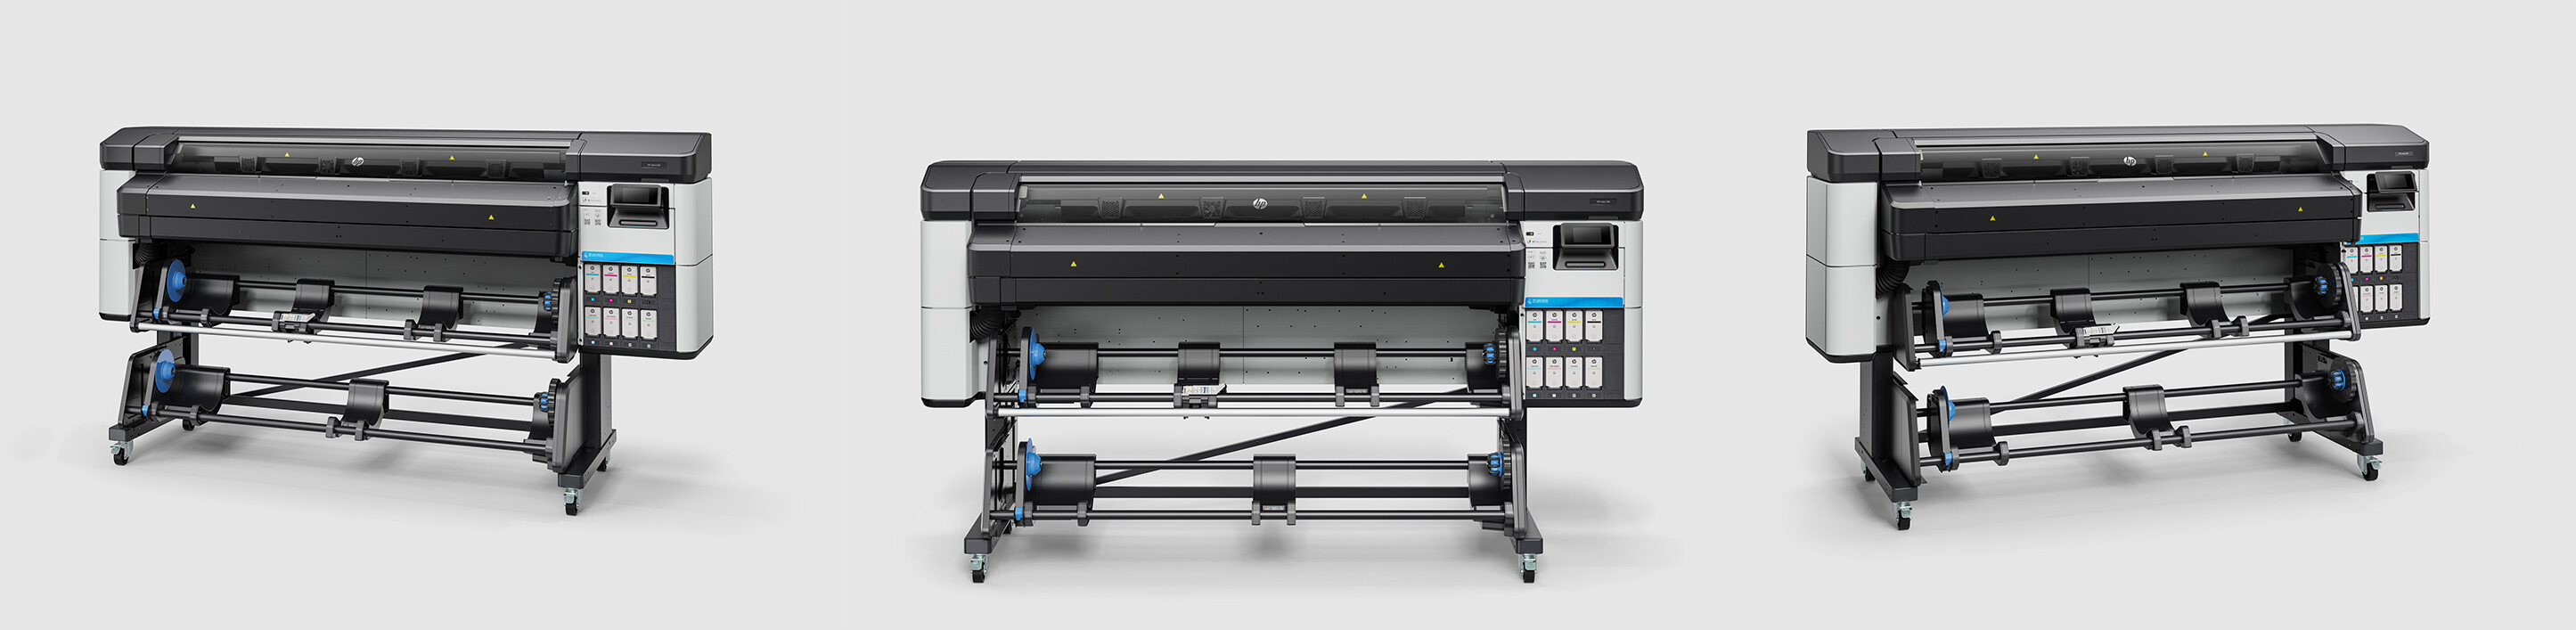 HP Latex 630 printer